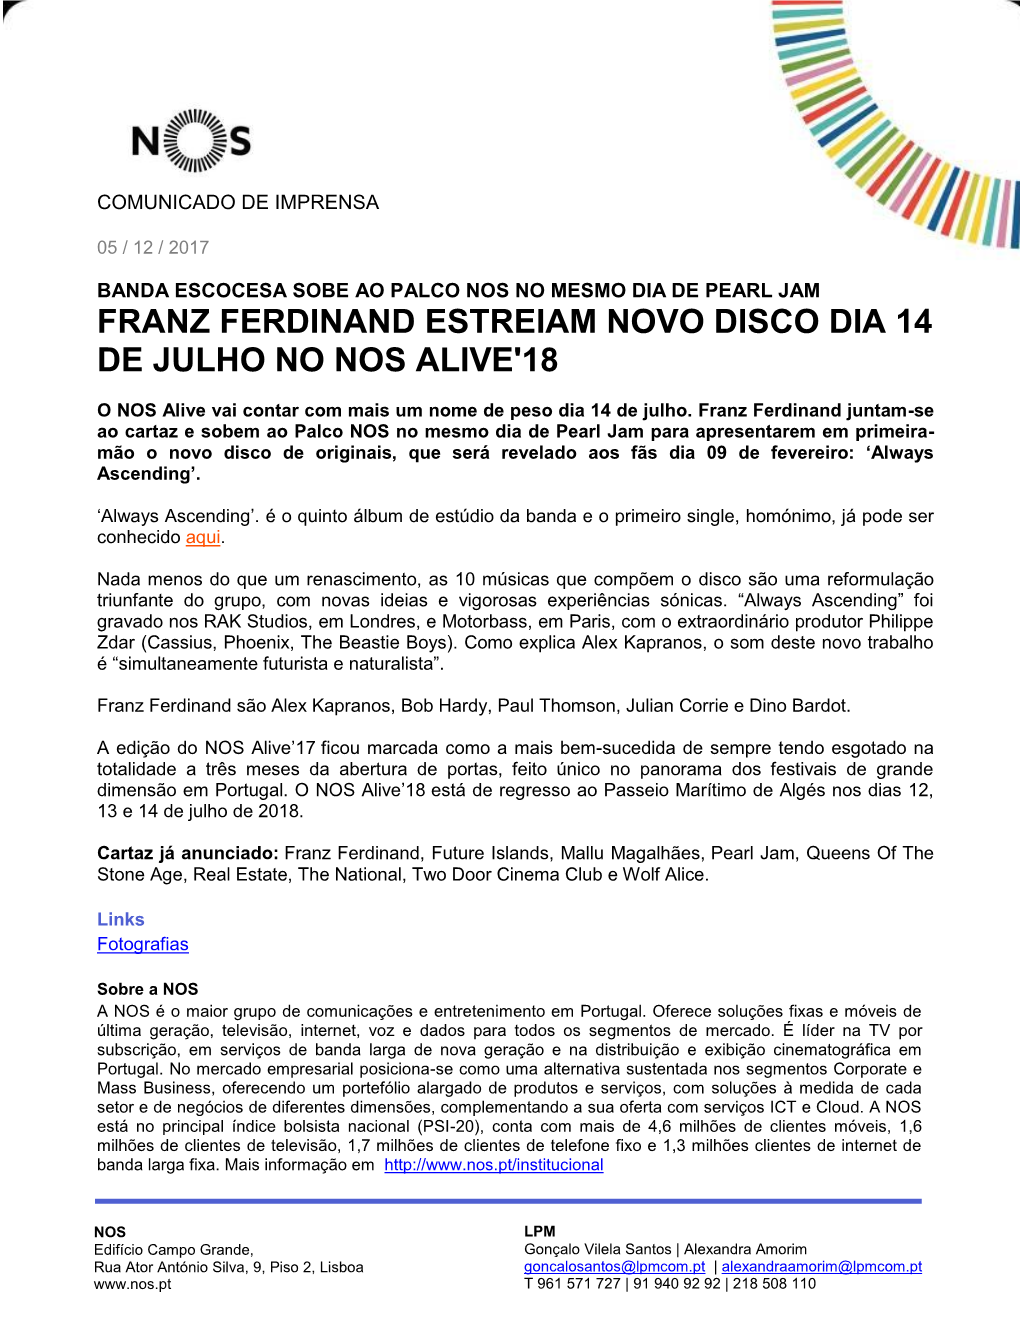 Franz Ferdinand Estreiam Novo Disco Dia 14 De Julho No Nos Alive'18